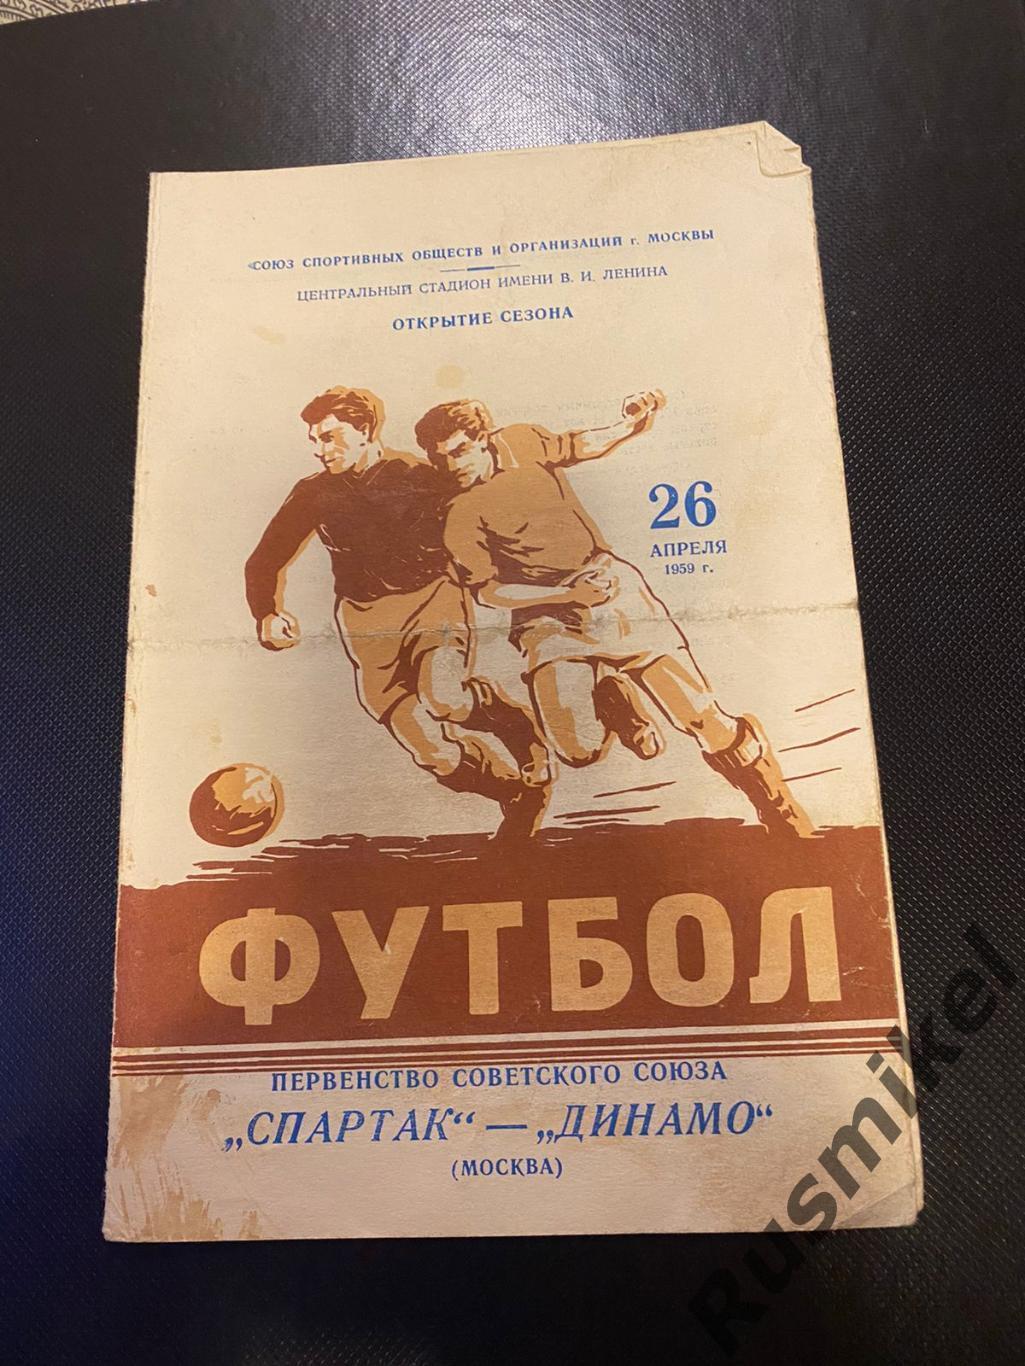 Спартак Москва - Динамо Москва 1959